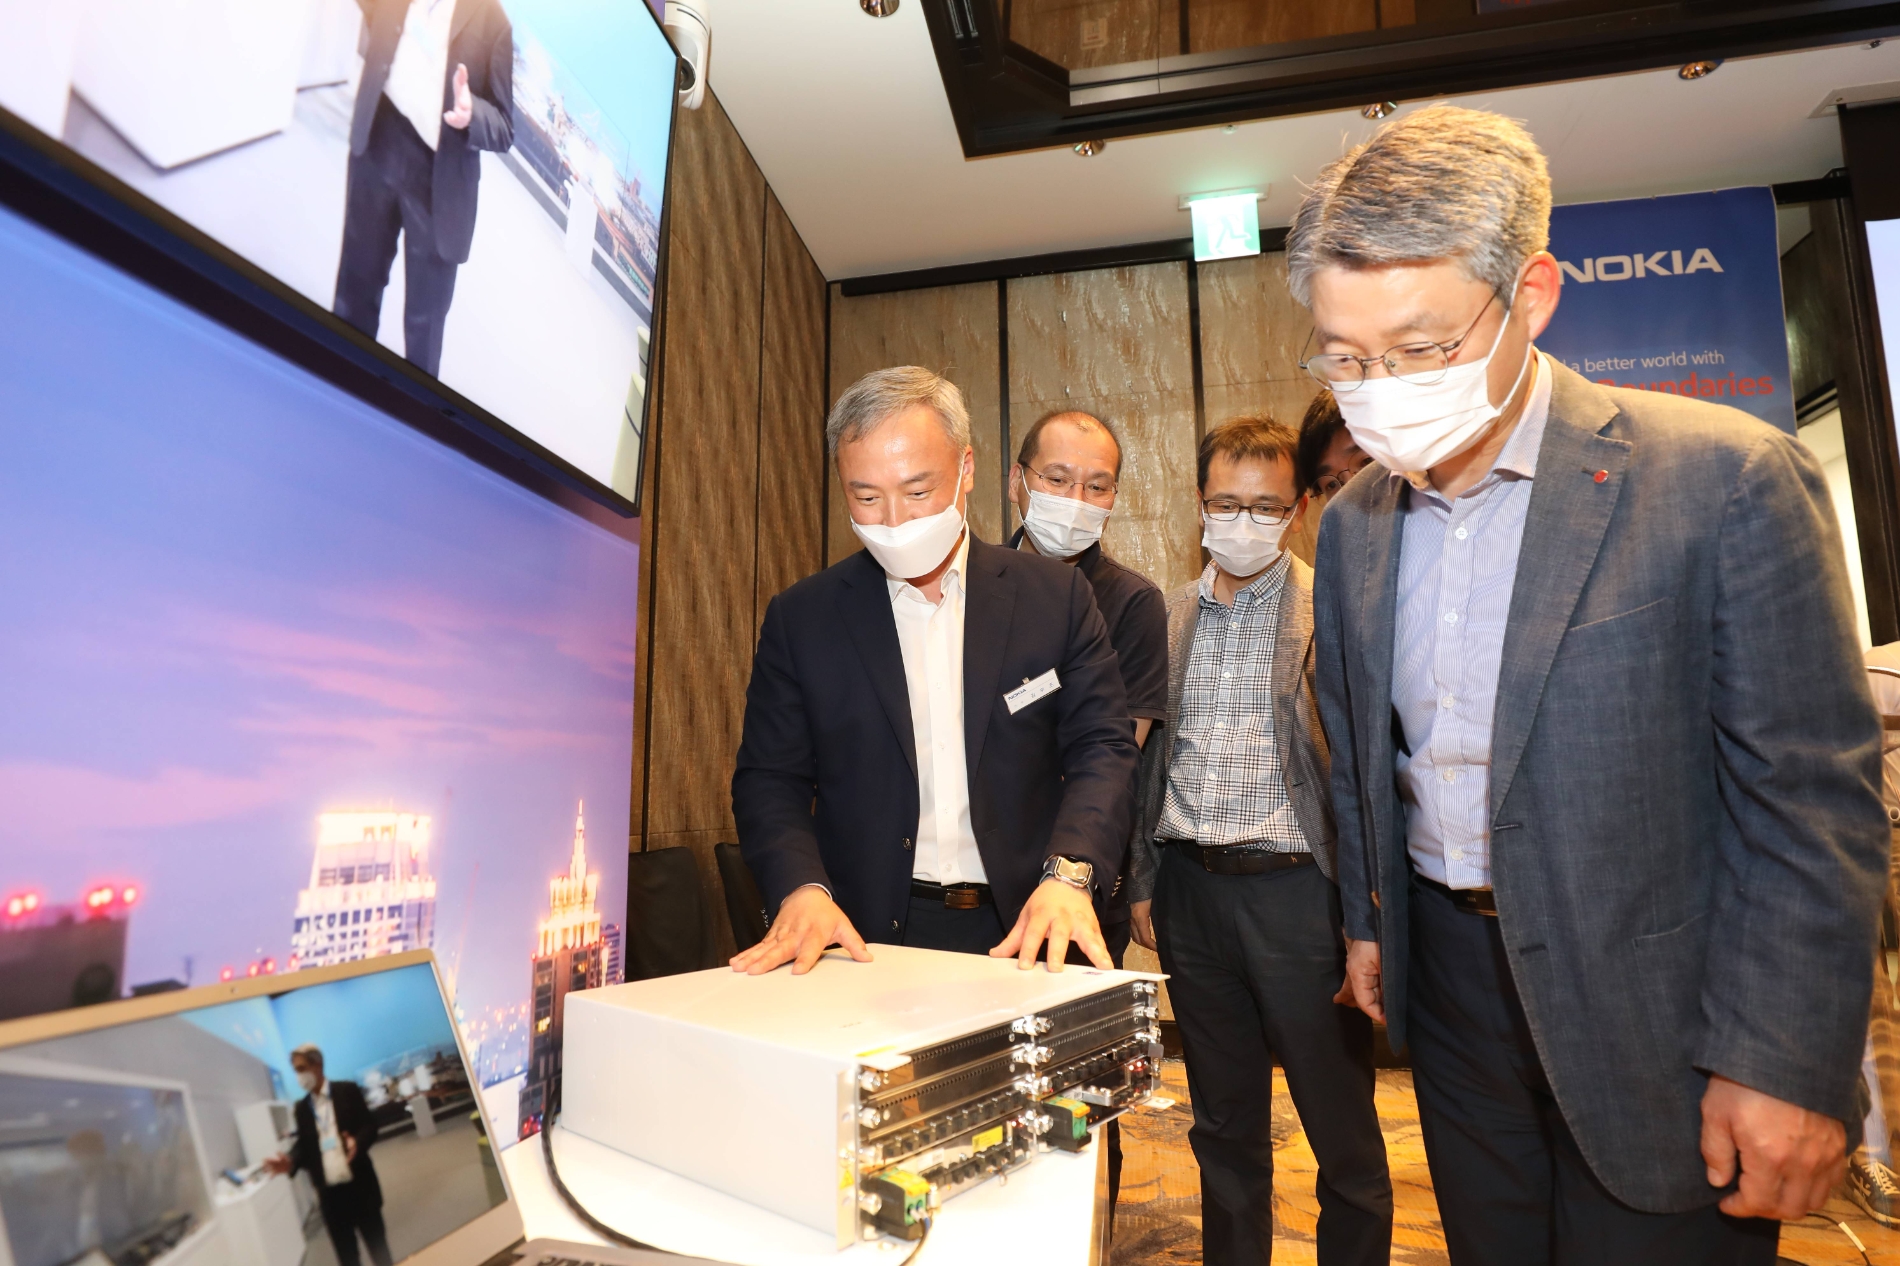 권준혁 LG유플러스 네트워크부문장(맨 오른쪽)이 김우조 노키아 전무로부터 노키아가 개발한 신형 기지국 장비에 대해 설명을 듣고 있다. 사진=LG유플러스